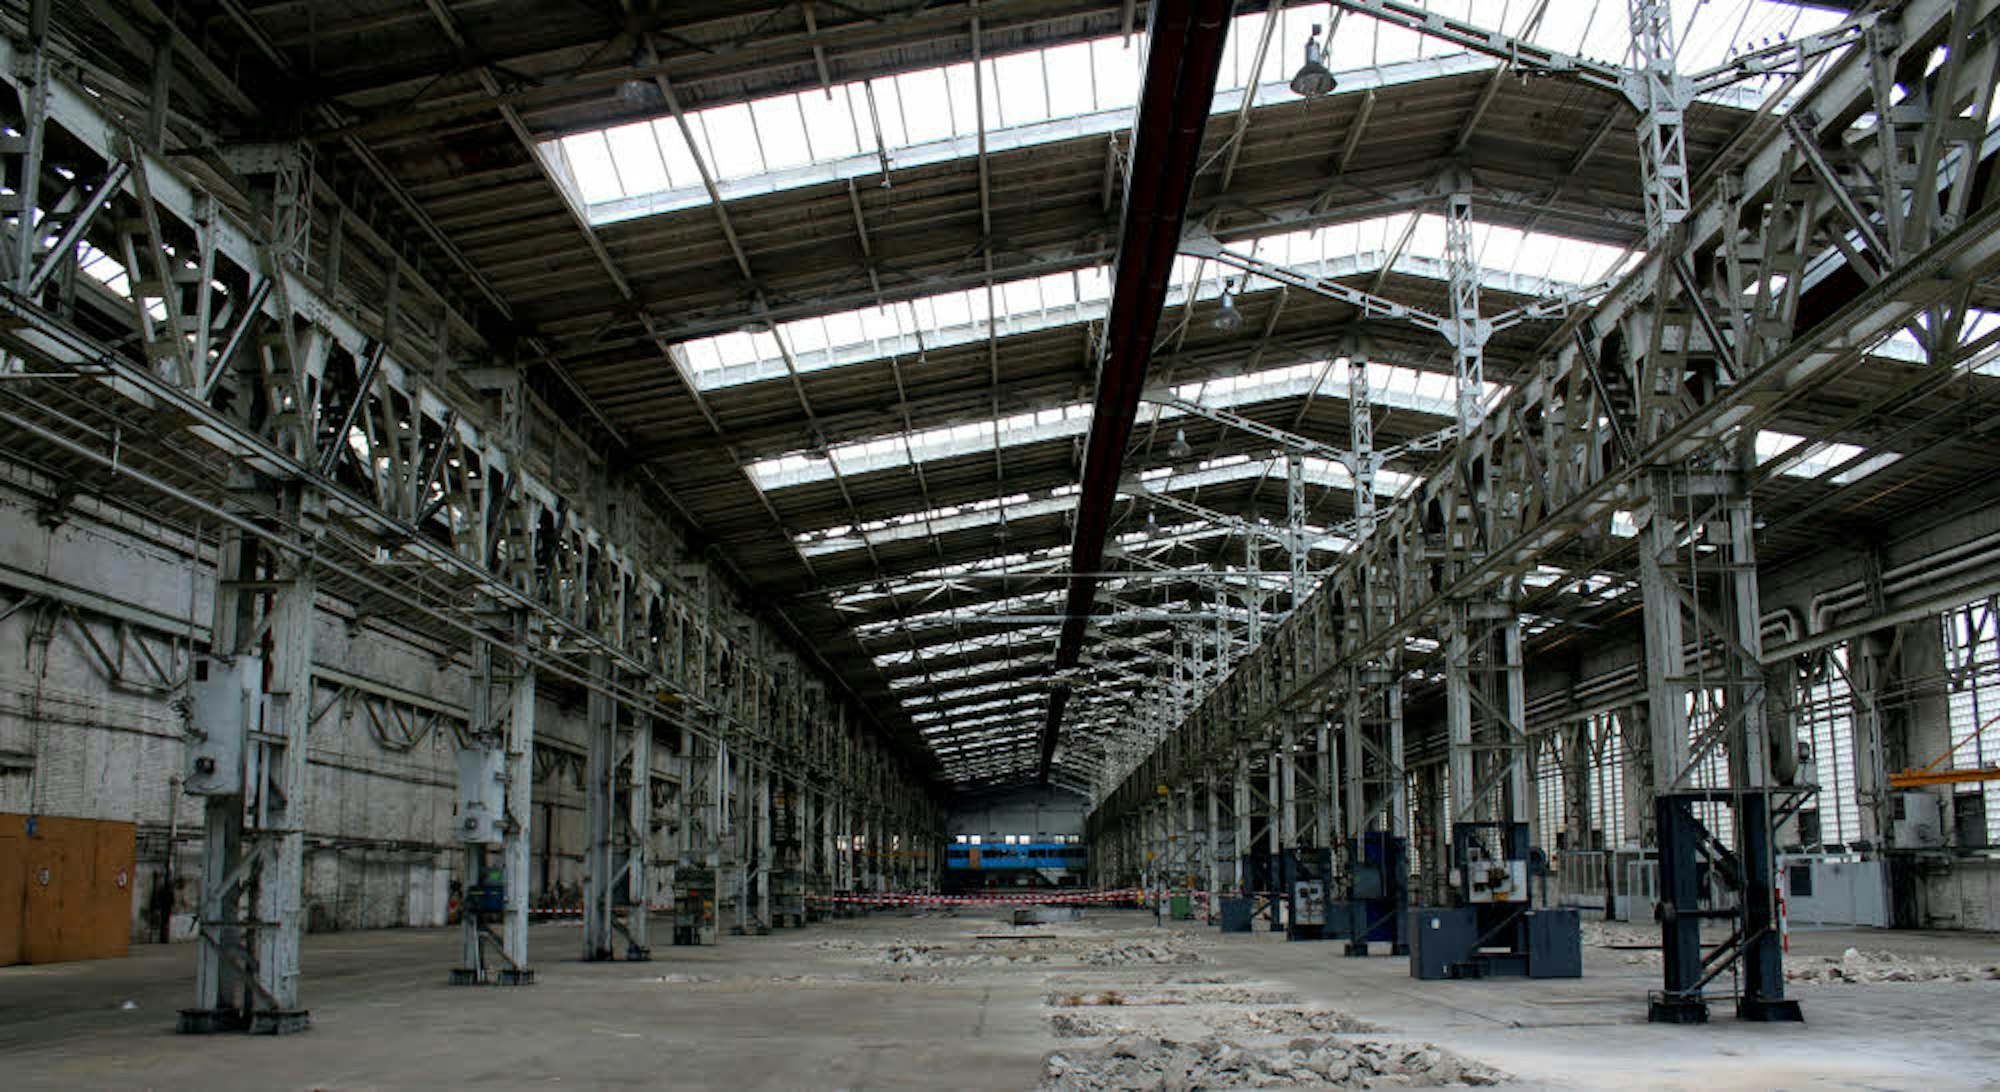 Für die künftige Nutzung der ehemaligen Industriehallen von MBE Cologne hat die Verwaltung derzeit keine Vorschläge.